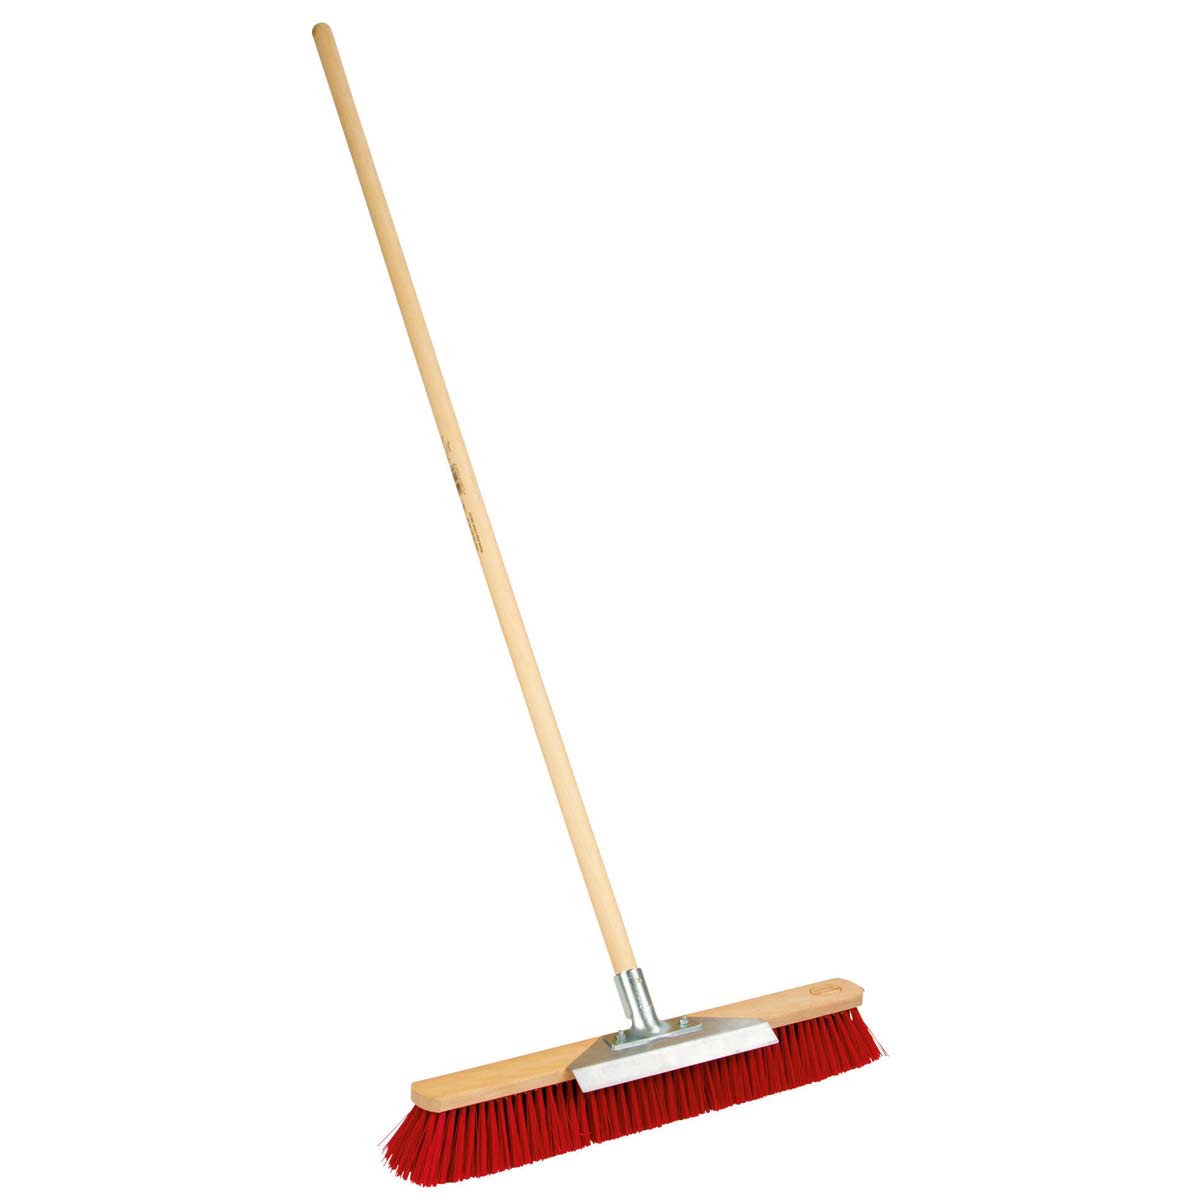 Large broom with scraper edge 40 cm